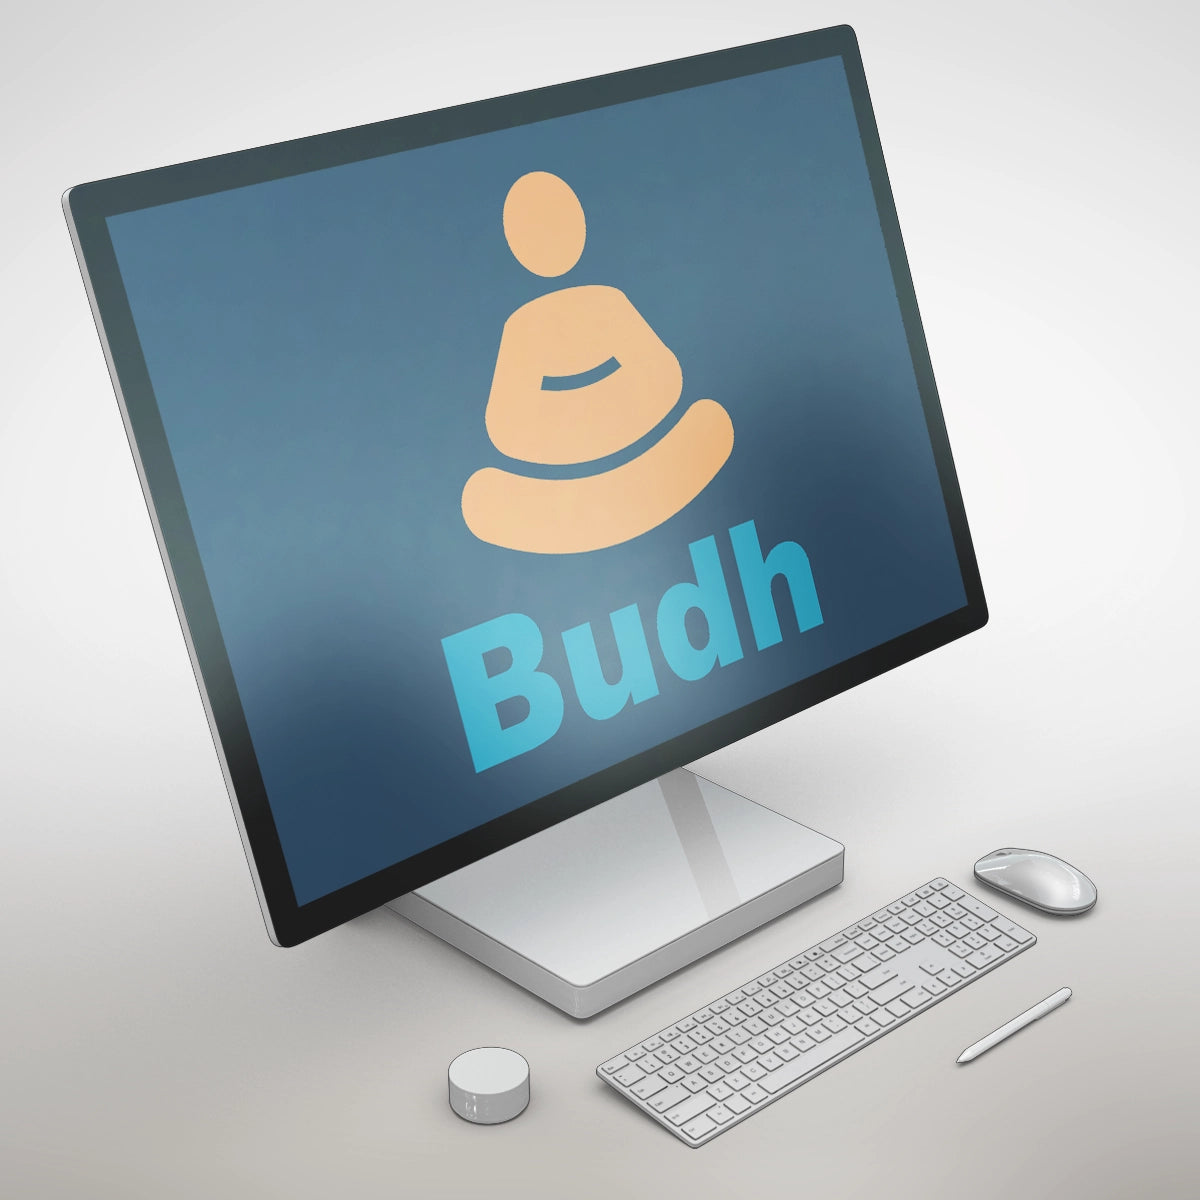 budh.com